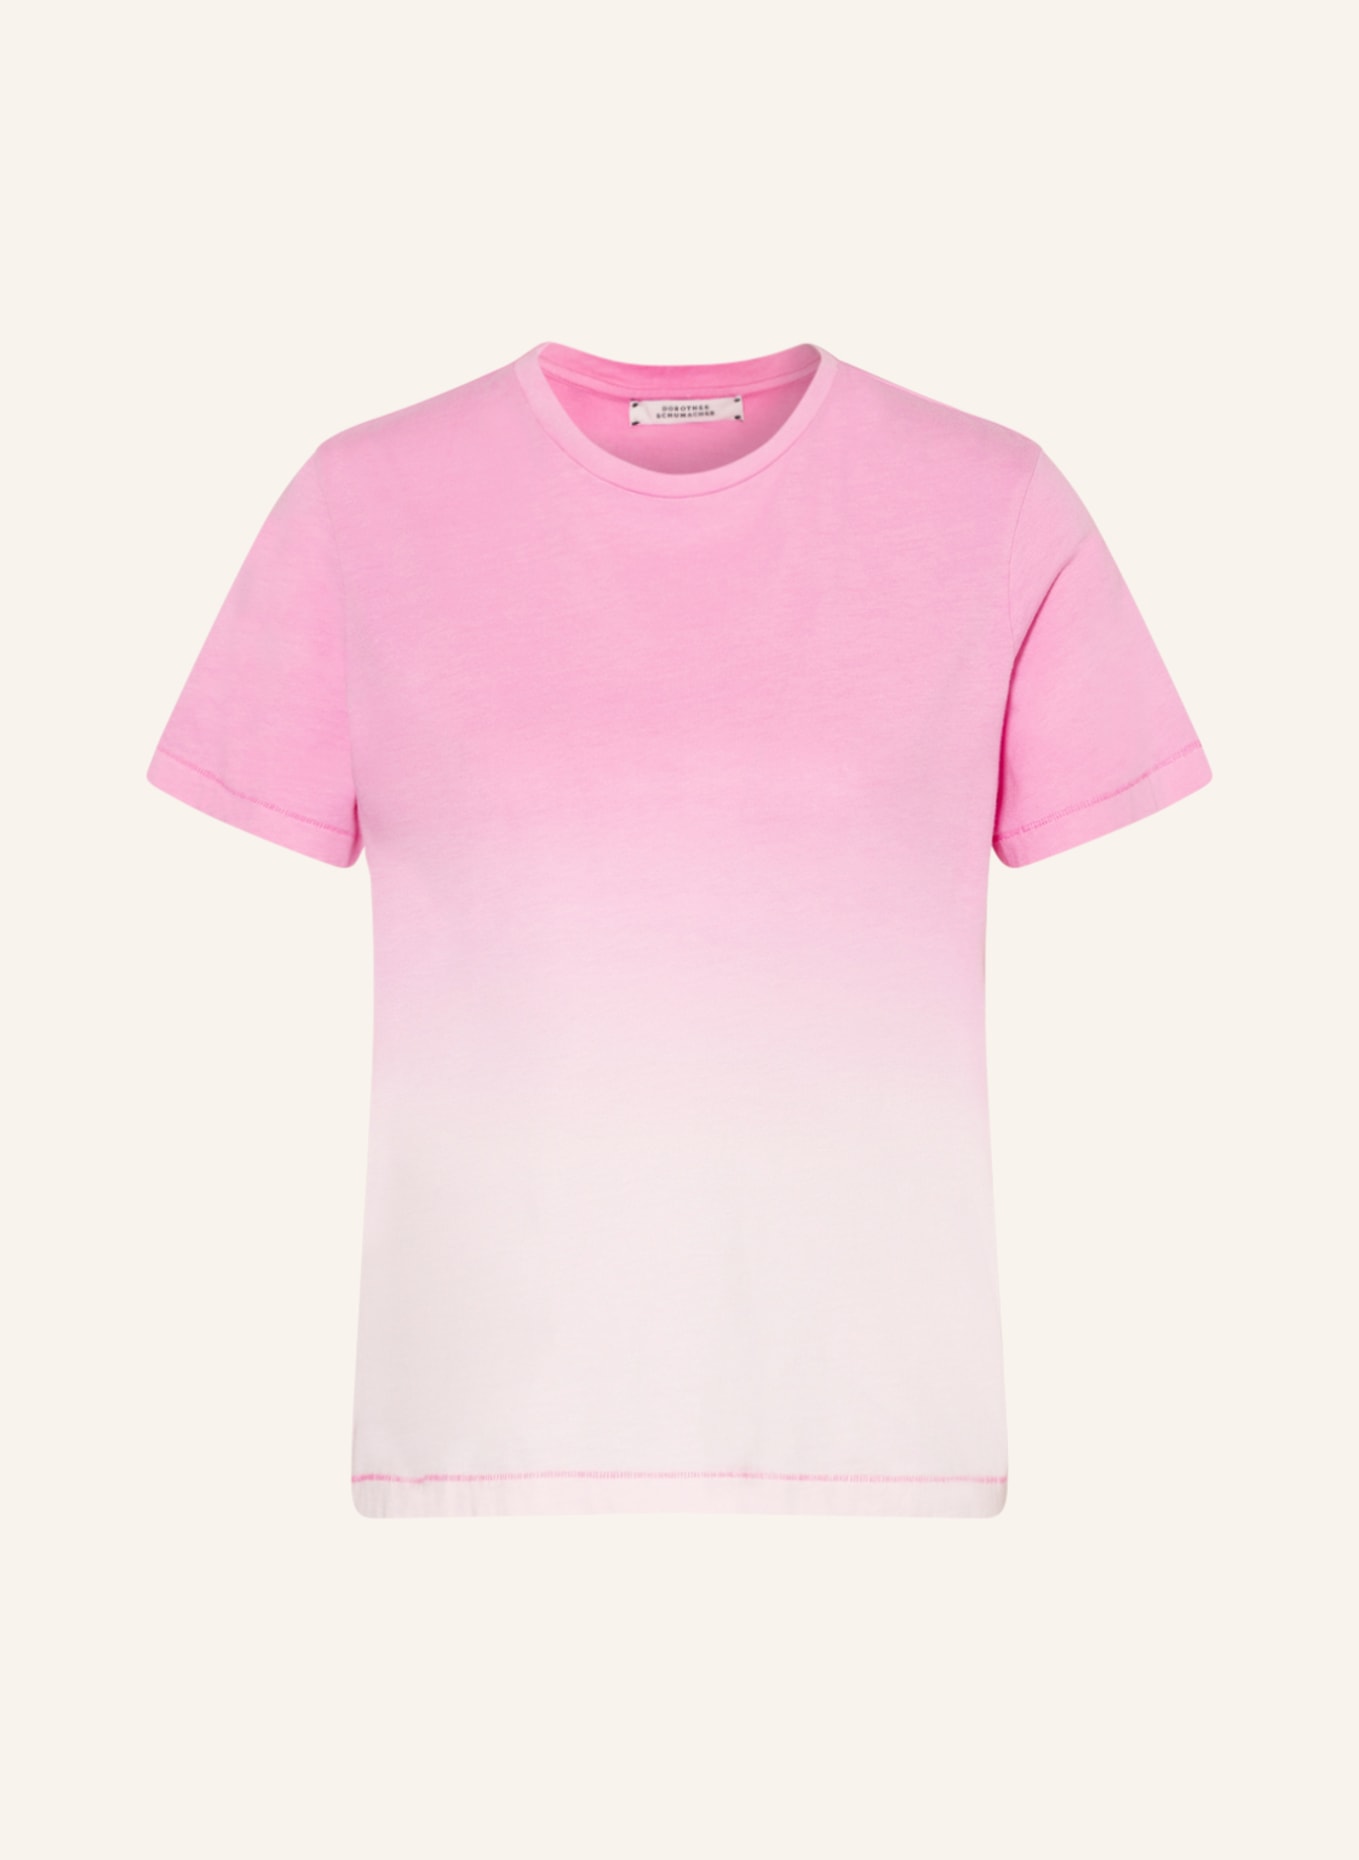 DOROTHEE SCHUMACHER T-shirt, Color: PINK/ LIGHT PINK (Image 1)